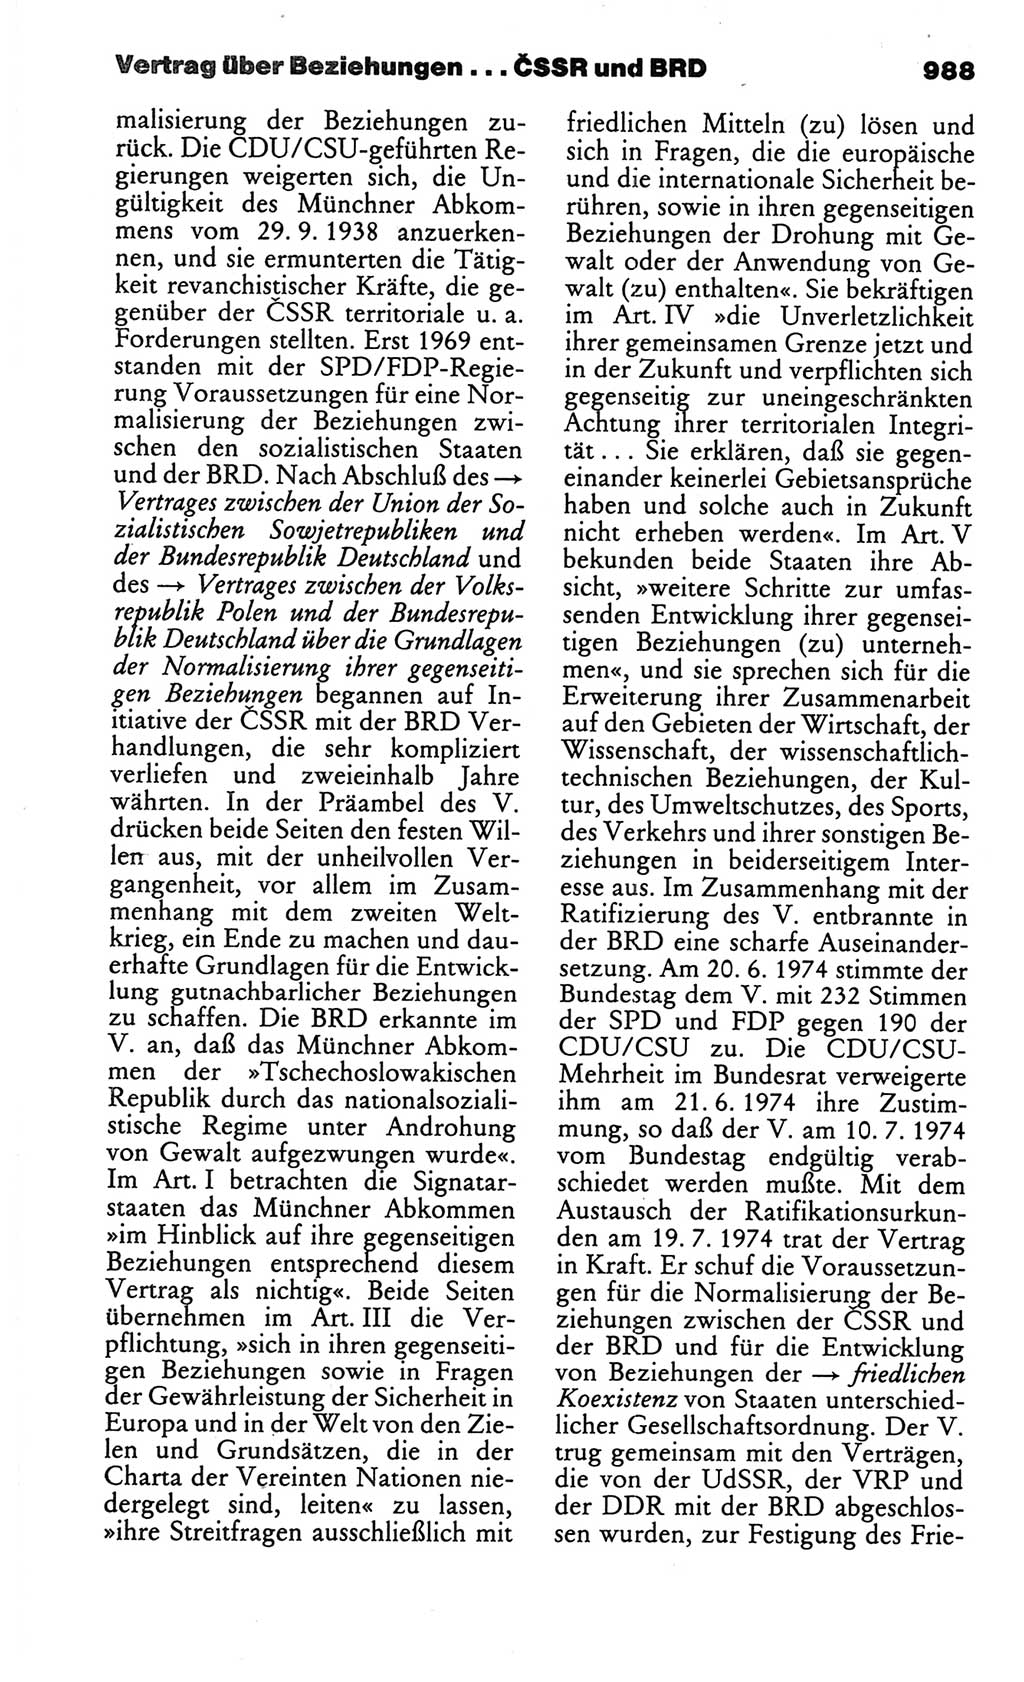 Kleines politisches Wörterbuch [Deutsche Demokratische Republik (DDR)] 1986, Seite 988 (Kl. pol. Wb. DDR 1986, S. 988)